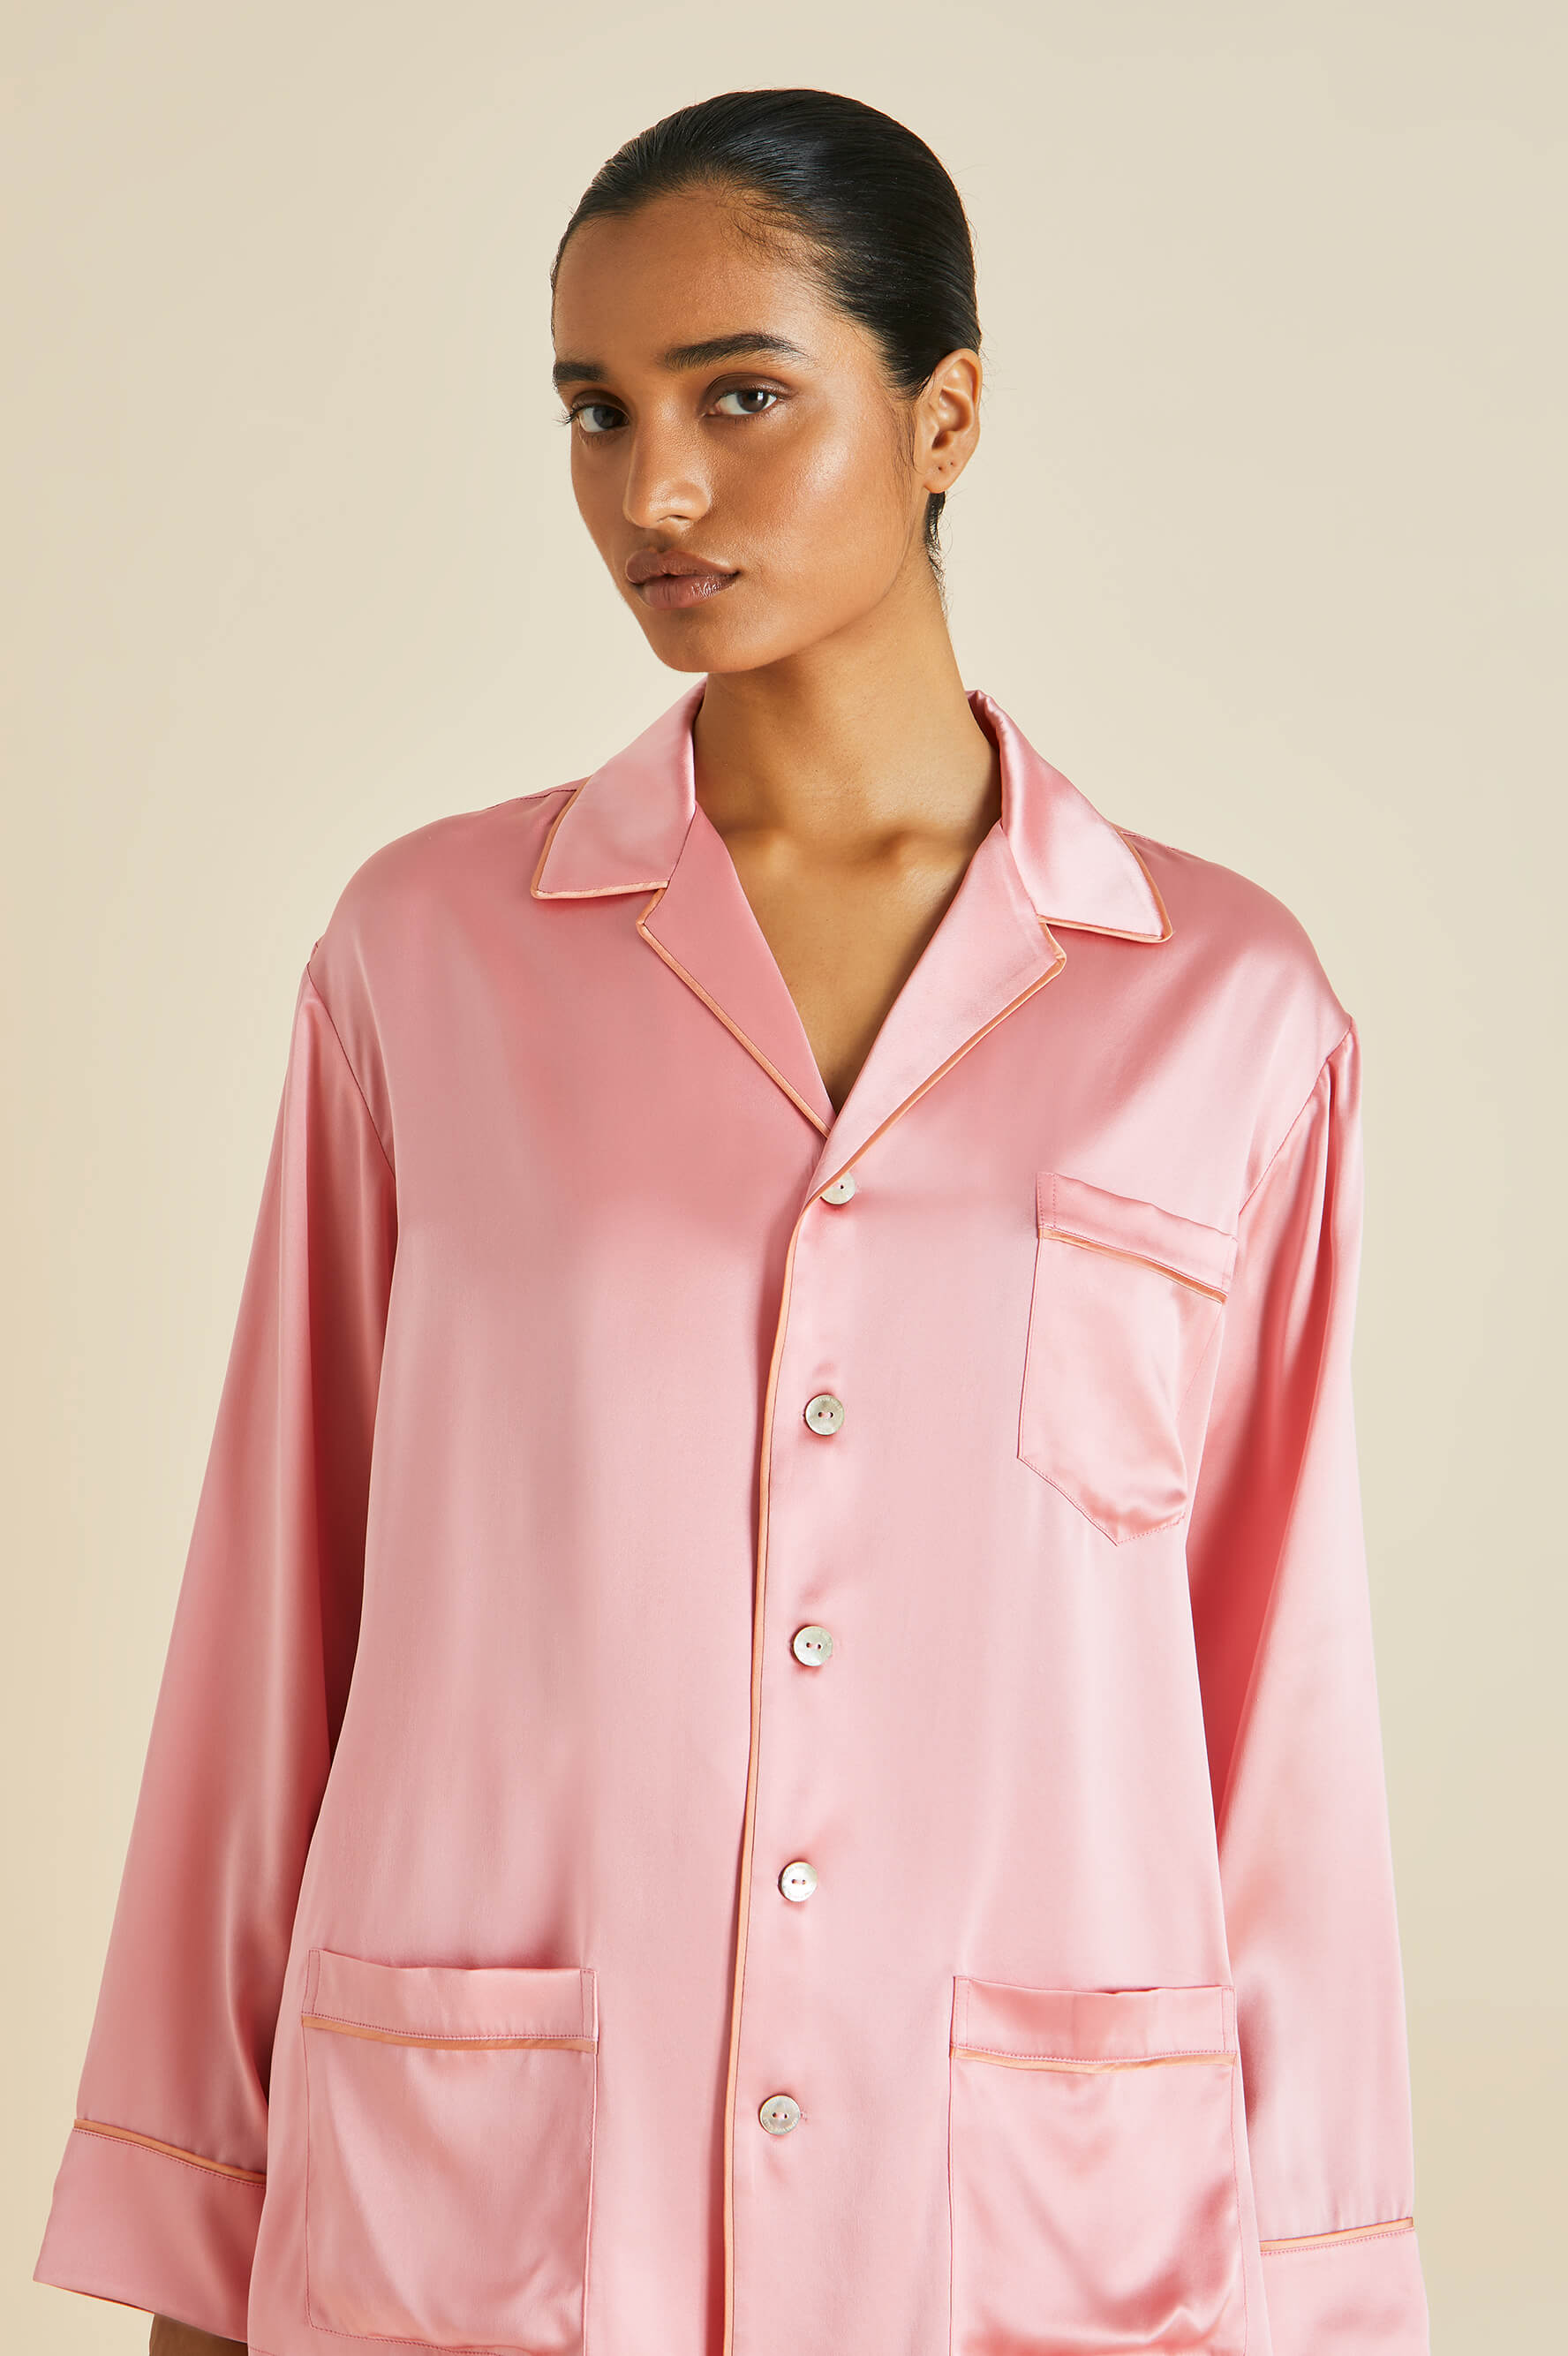 Yves Pink Pajamas in Silk Satin